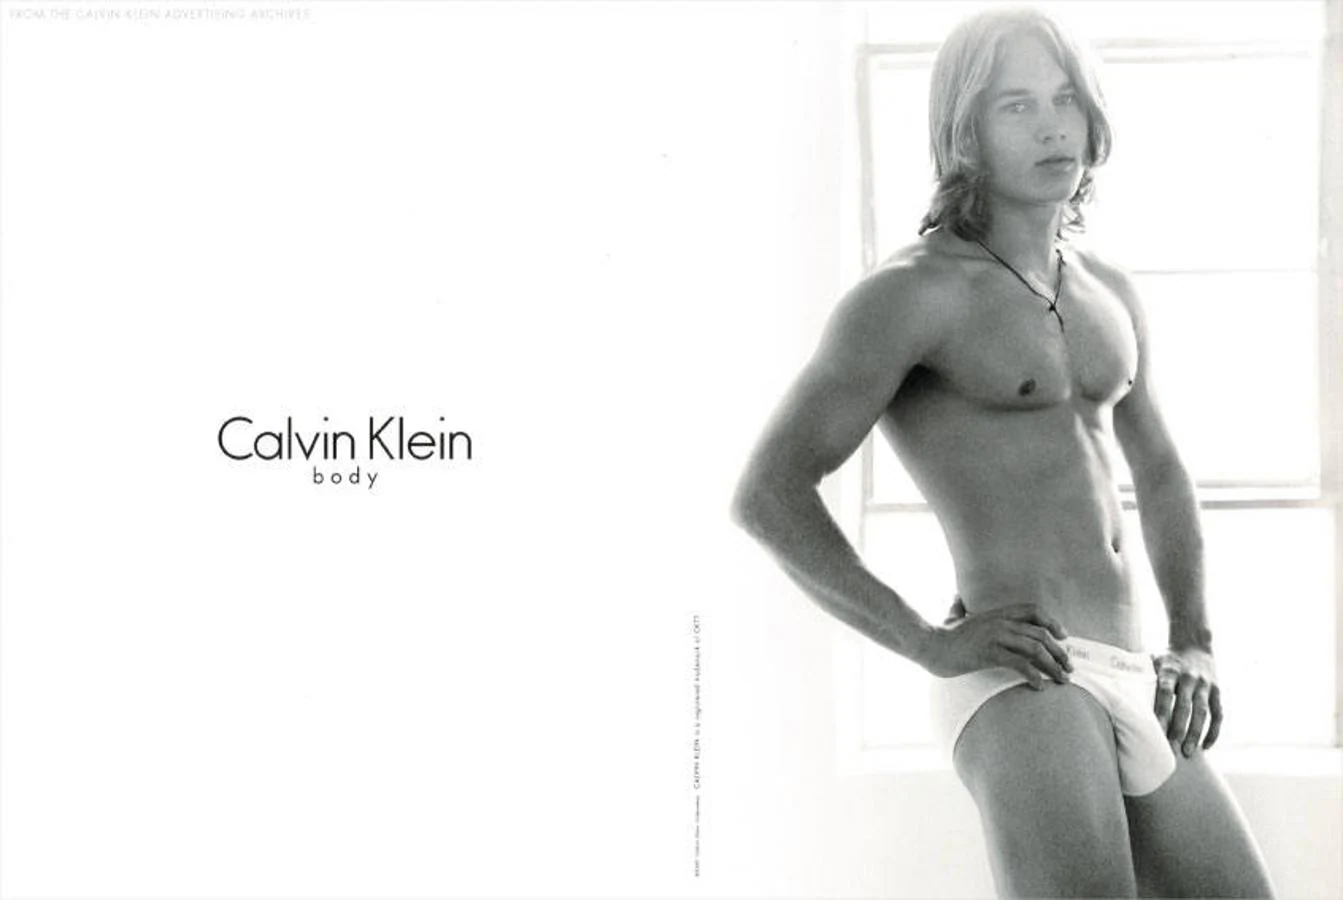 Un jovencísimo Travis Fimmel en la sensual campaña de ropa interior de Calvin Klein.